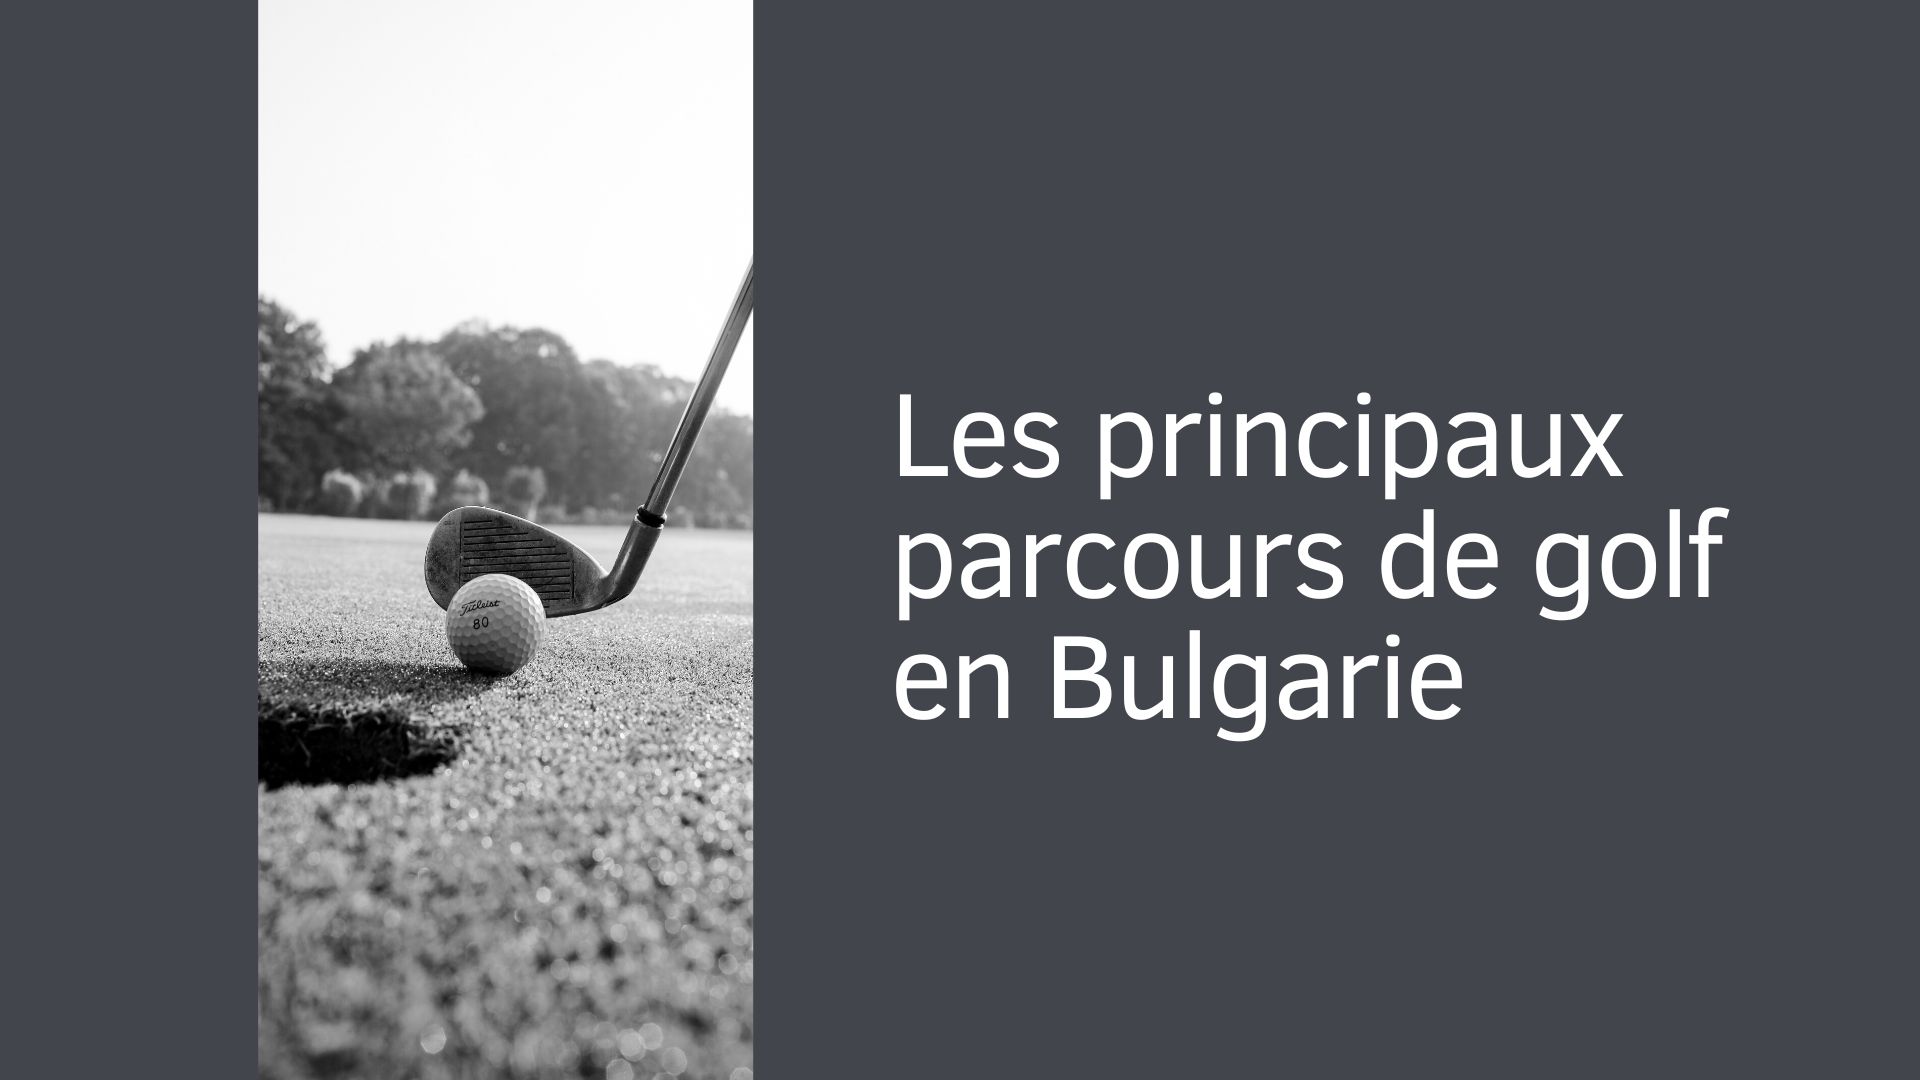 Les principaux parcours de golf en Bulgarie